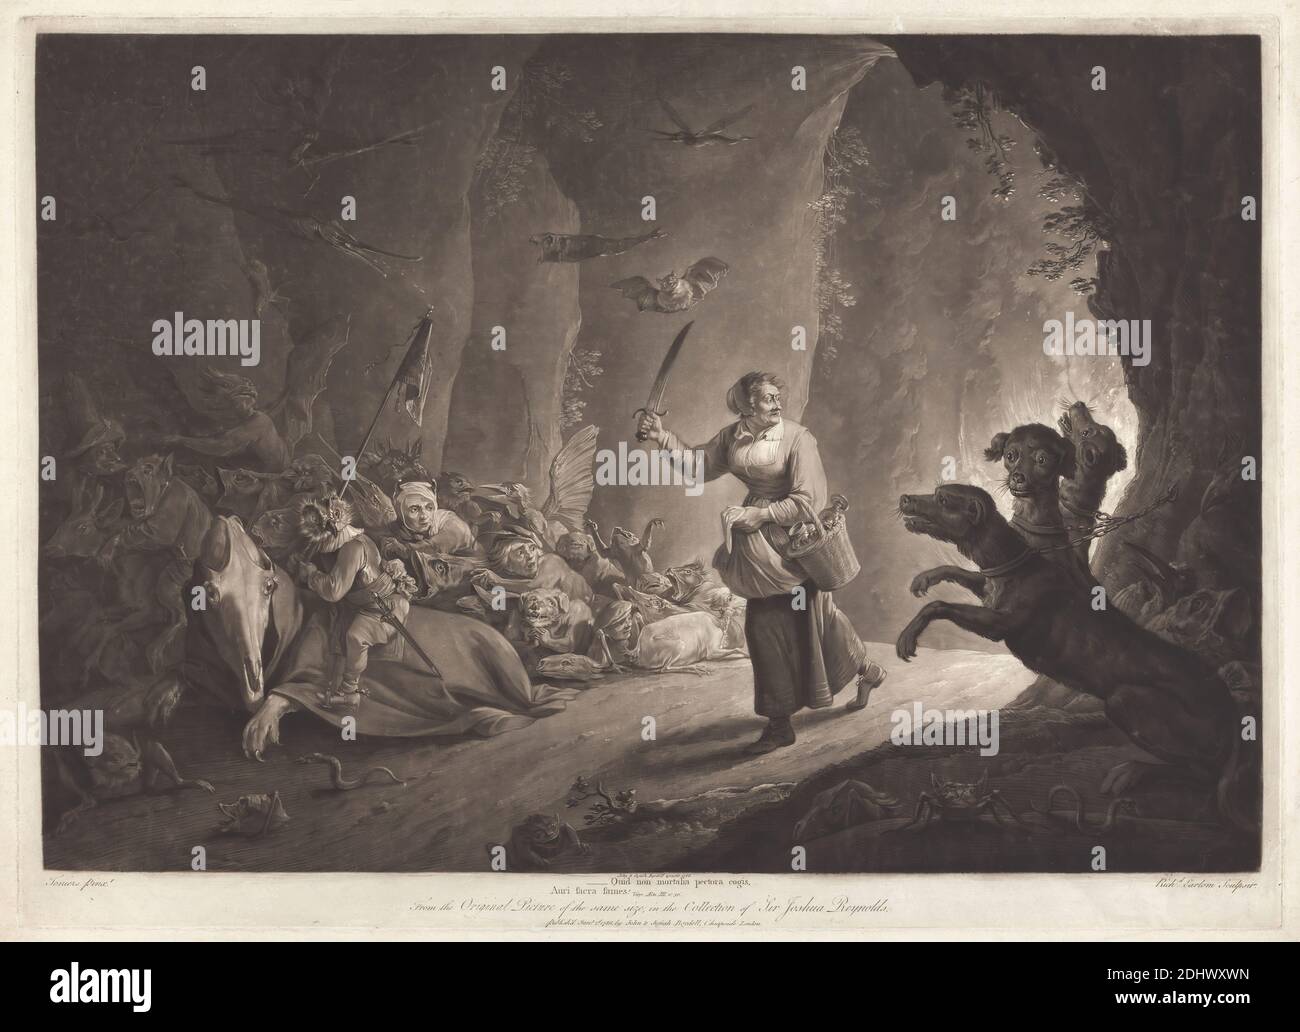 The Enchantress, Print Made by Richard Earlom, 1743–1822, British, after David Teniers, 1610–1690, Flämisch, Publiziert von John Boydell, 1720–1804, British, 1786, Mezzotint und Radierung auf mittlerem, leicht strukturiertem, cremefarbenem Papier, Blatt: 21 5/8 × 29 3/4 Zoll (54.9 × 75.6 cm), Platte: 28 3/8 × 26 3/4 Zoll (72.1 × 67.9 cm), und Bild: 17 7/8 × 25 7/8 Zoll (45.4 × 65.7 cm), Tiere, Anthropomorphismus, Korb, Höhle, Ketten, Hunde (Tiere), Zauberin, Fische, Grotesken, Köpfe, Schmuck, Metamorphosen  klassische Mythologie, Eule, religiöse und mythologische Thema, Reptilien, Schwerter, Reben, Flügel Stockfoto